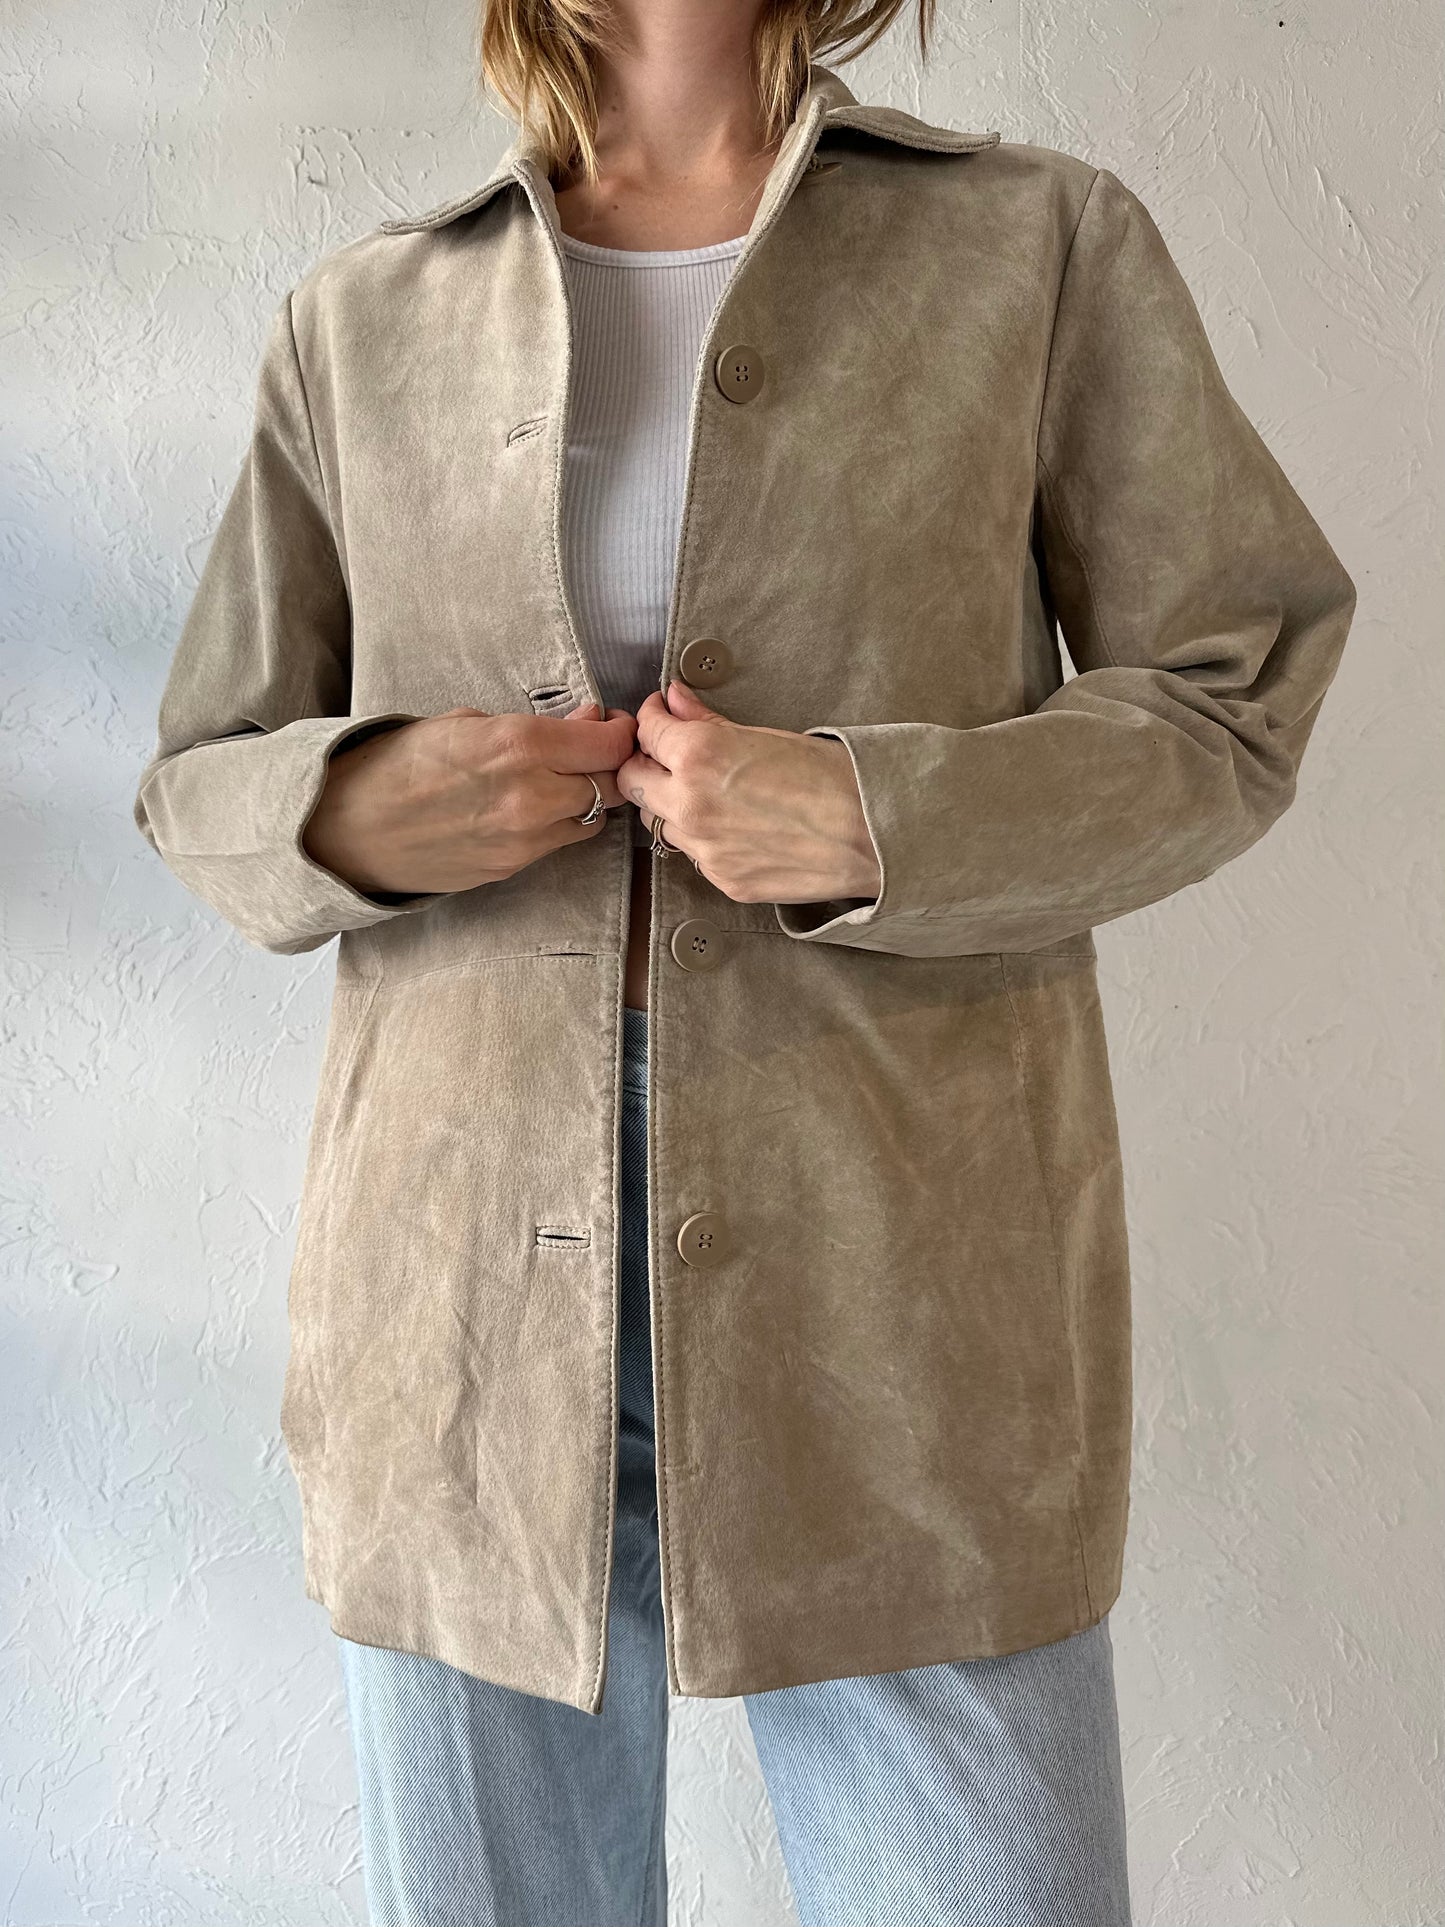 Y2k 'Bernardo' Tan Suede Leather Jacket / Small